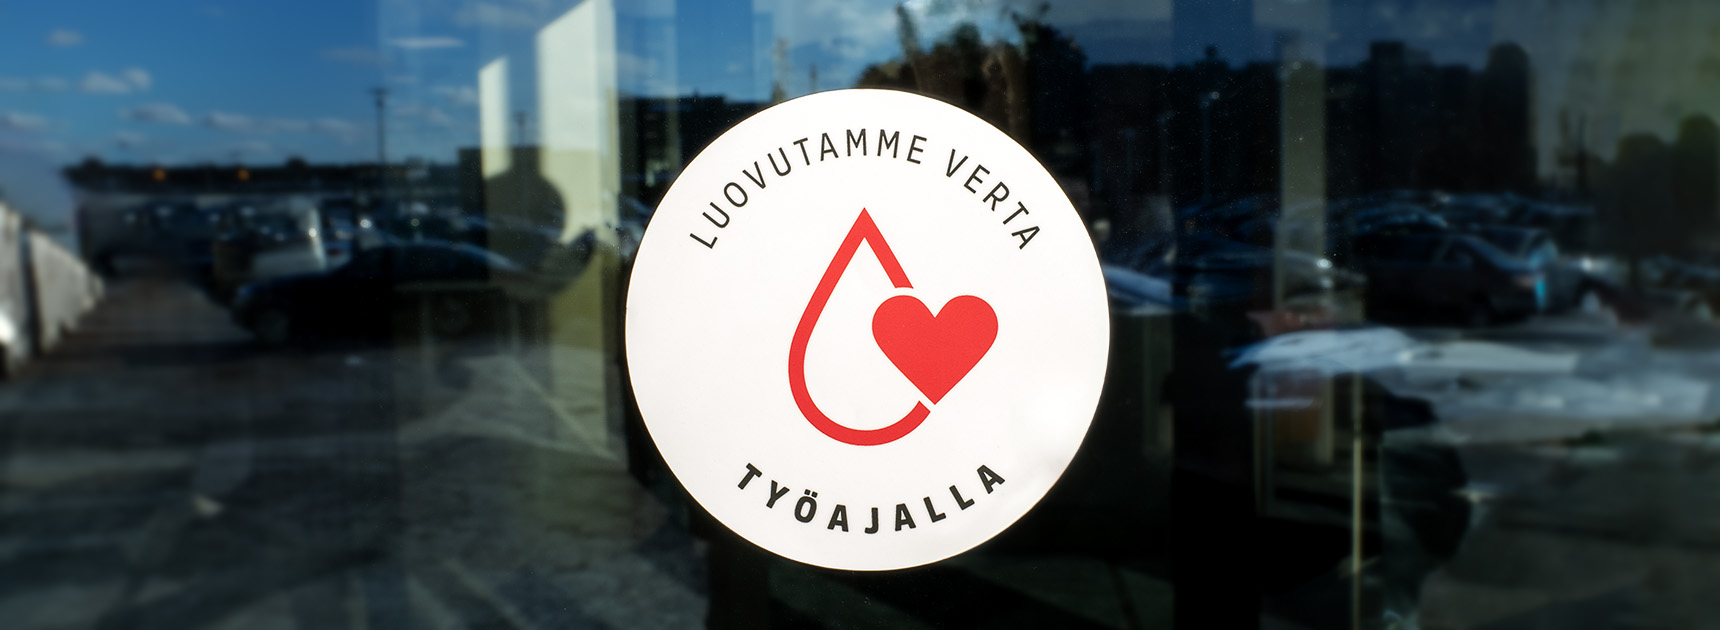 Blodtjänsts arbetsplatscertifikat klistermärket i företagsfönstret.